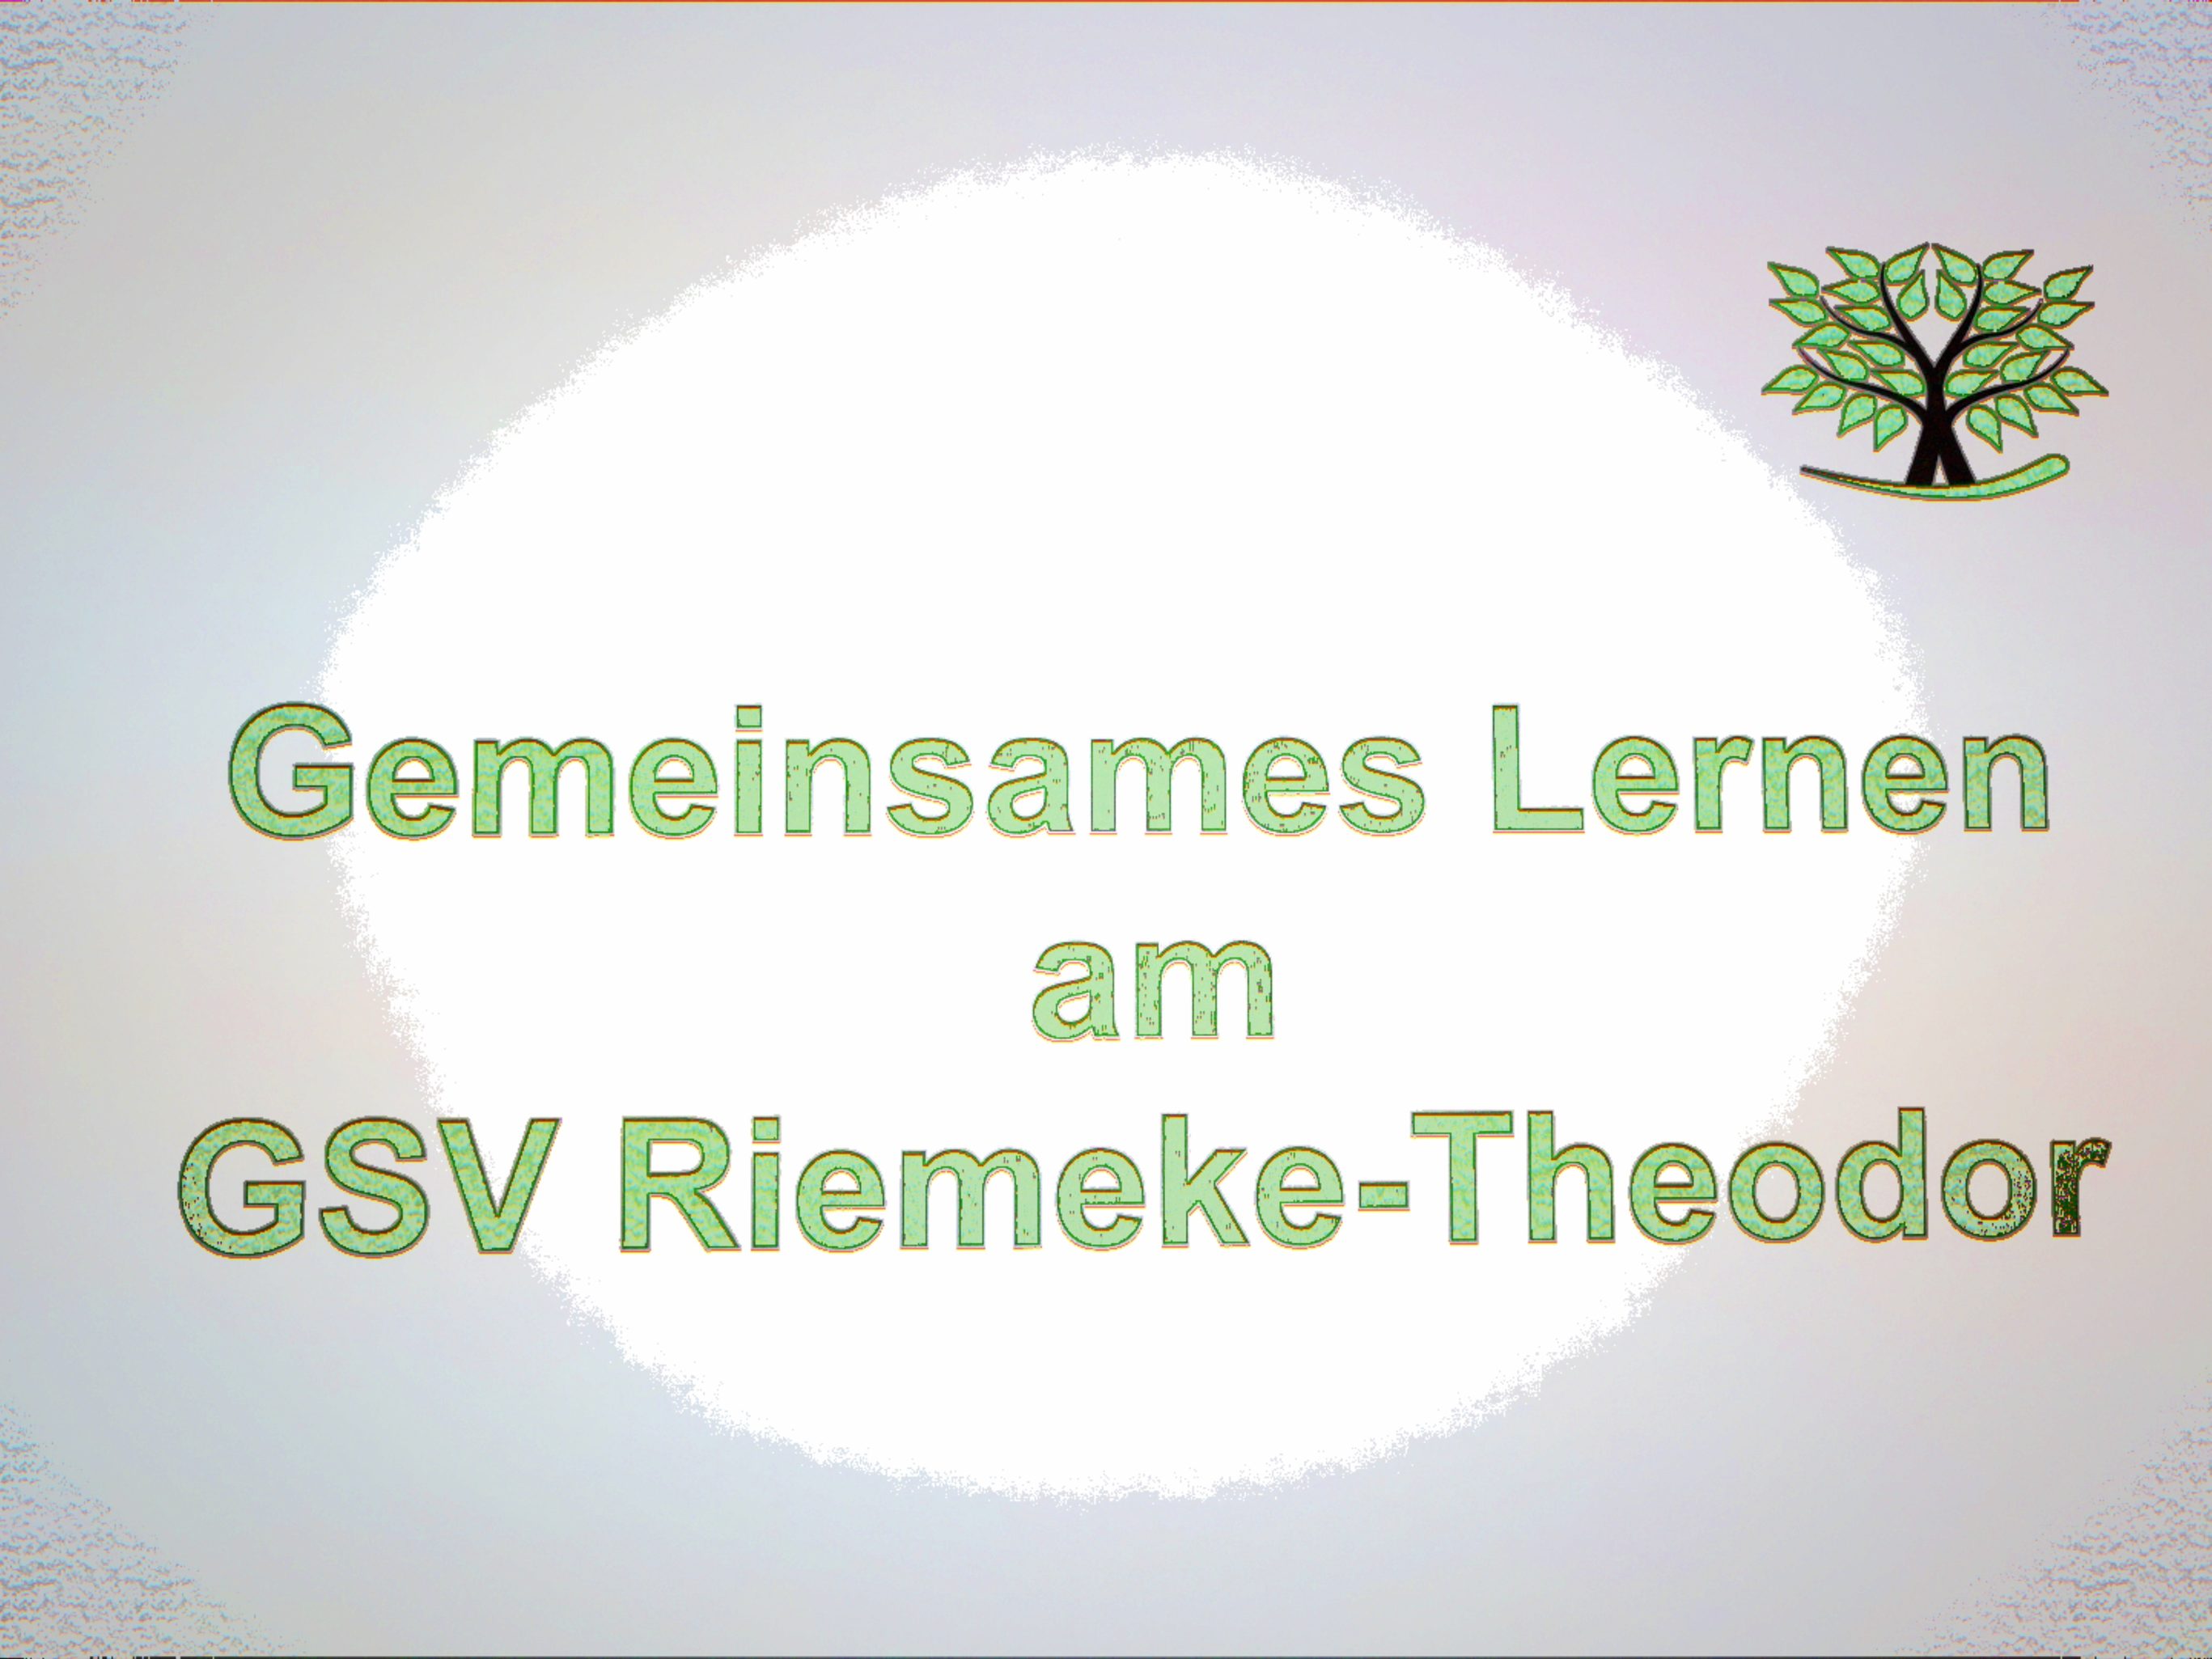 Gemeinsames Lernen am GSV Riemeke-Theodor